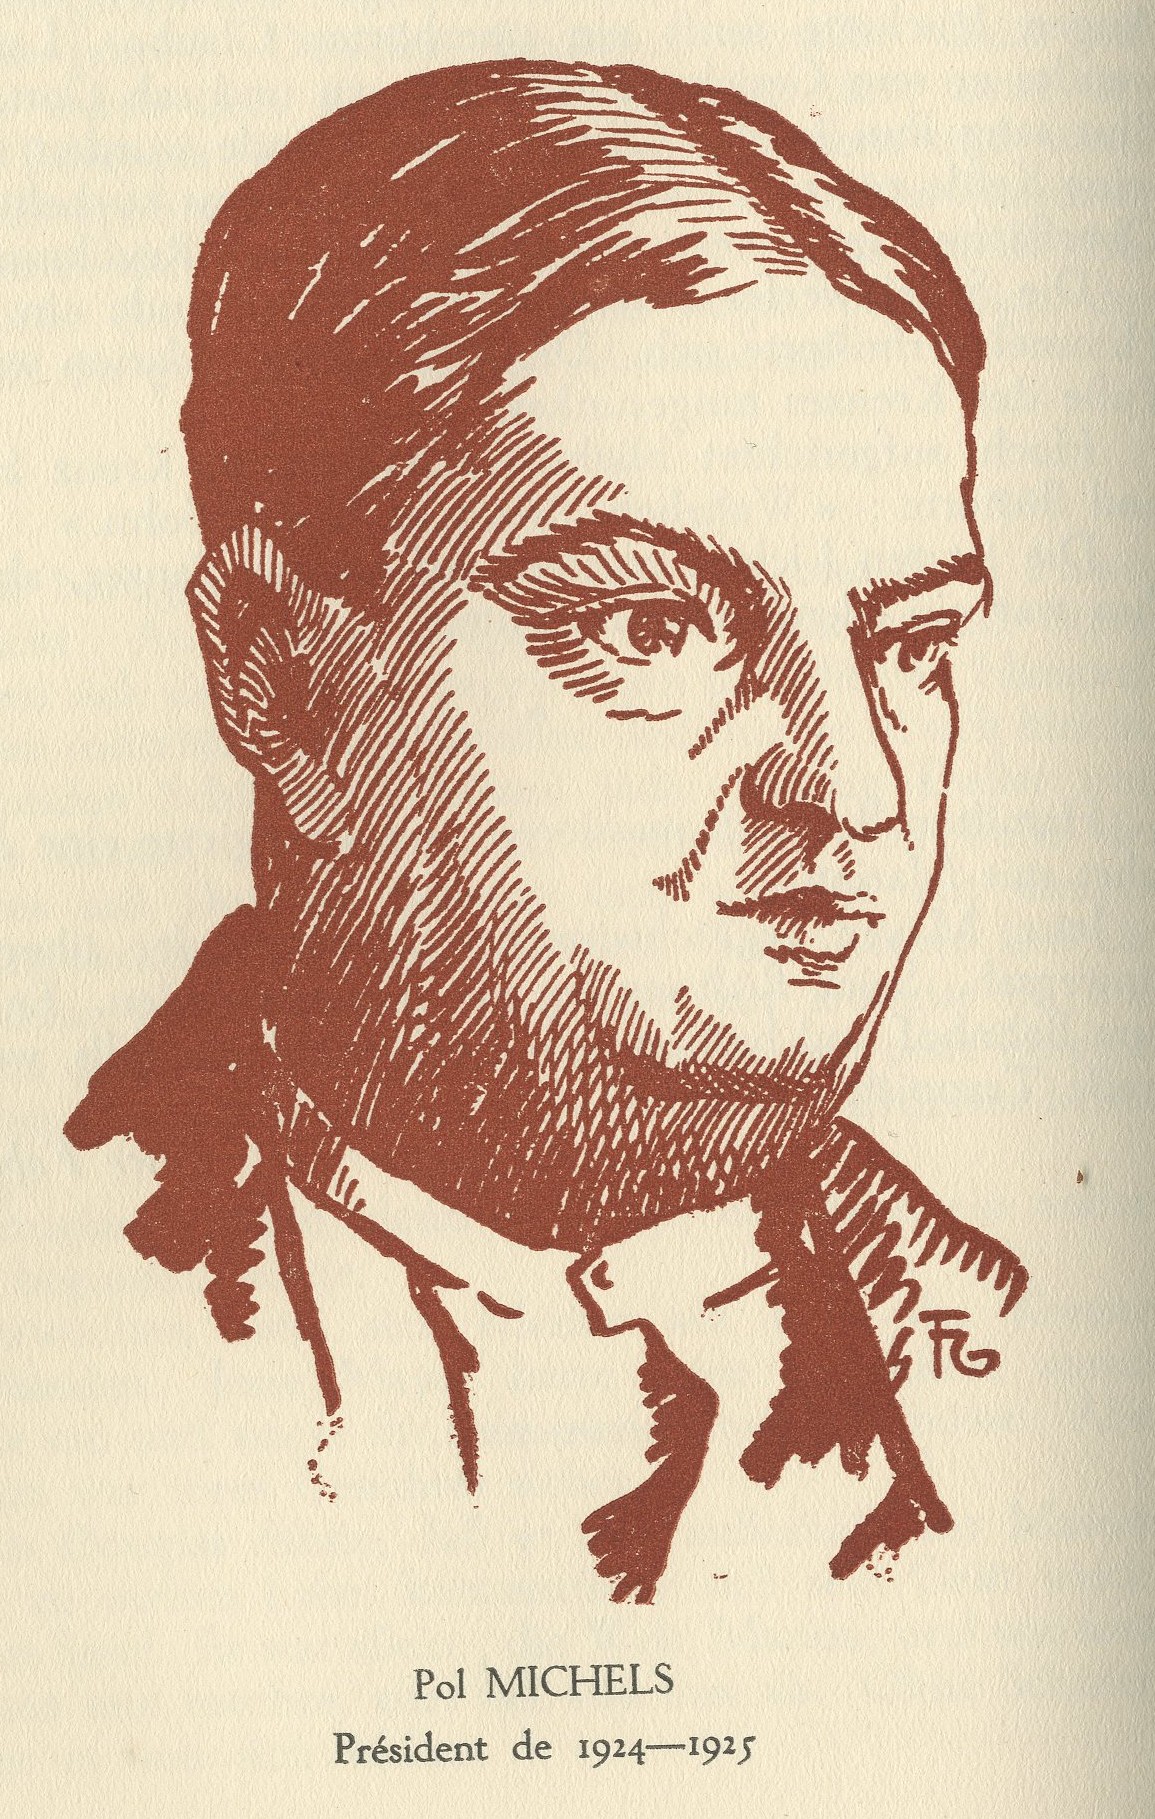 
					
						Zeichnung: Félix Glatz. In: Annuaire de l'AGEL 1933, S. 96
					
					
					© Droits réservés/Alle Rechte vorbehalten
					